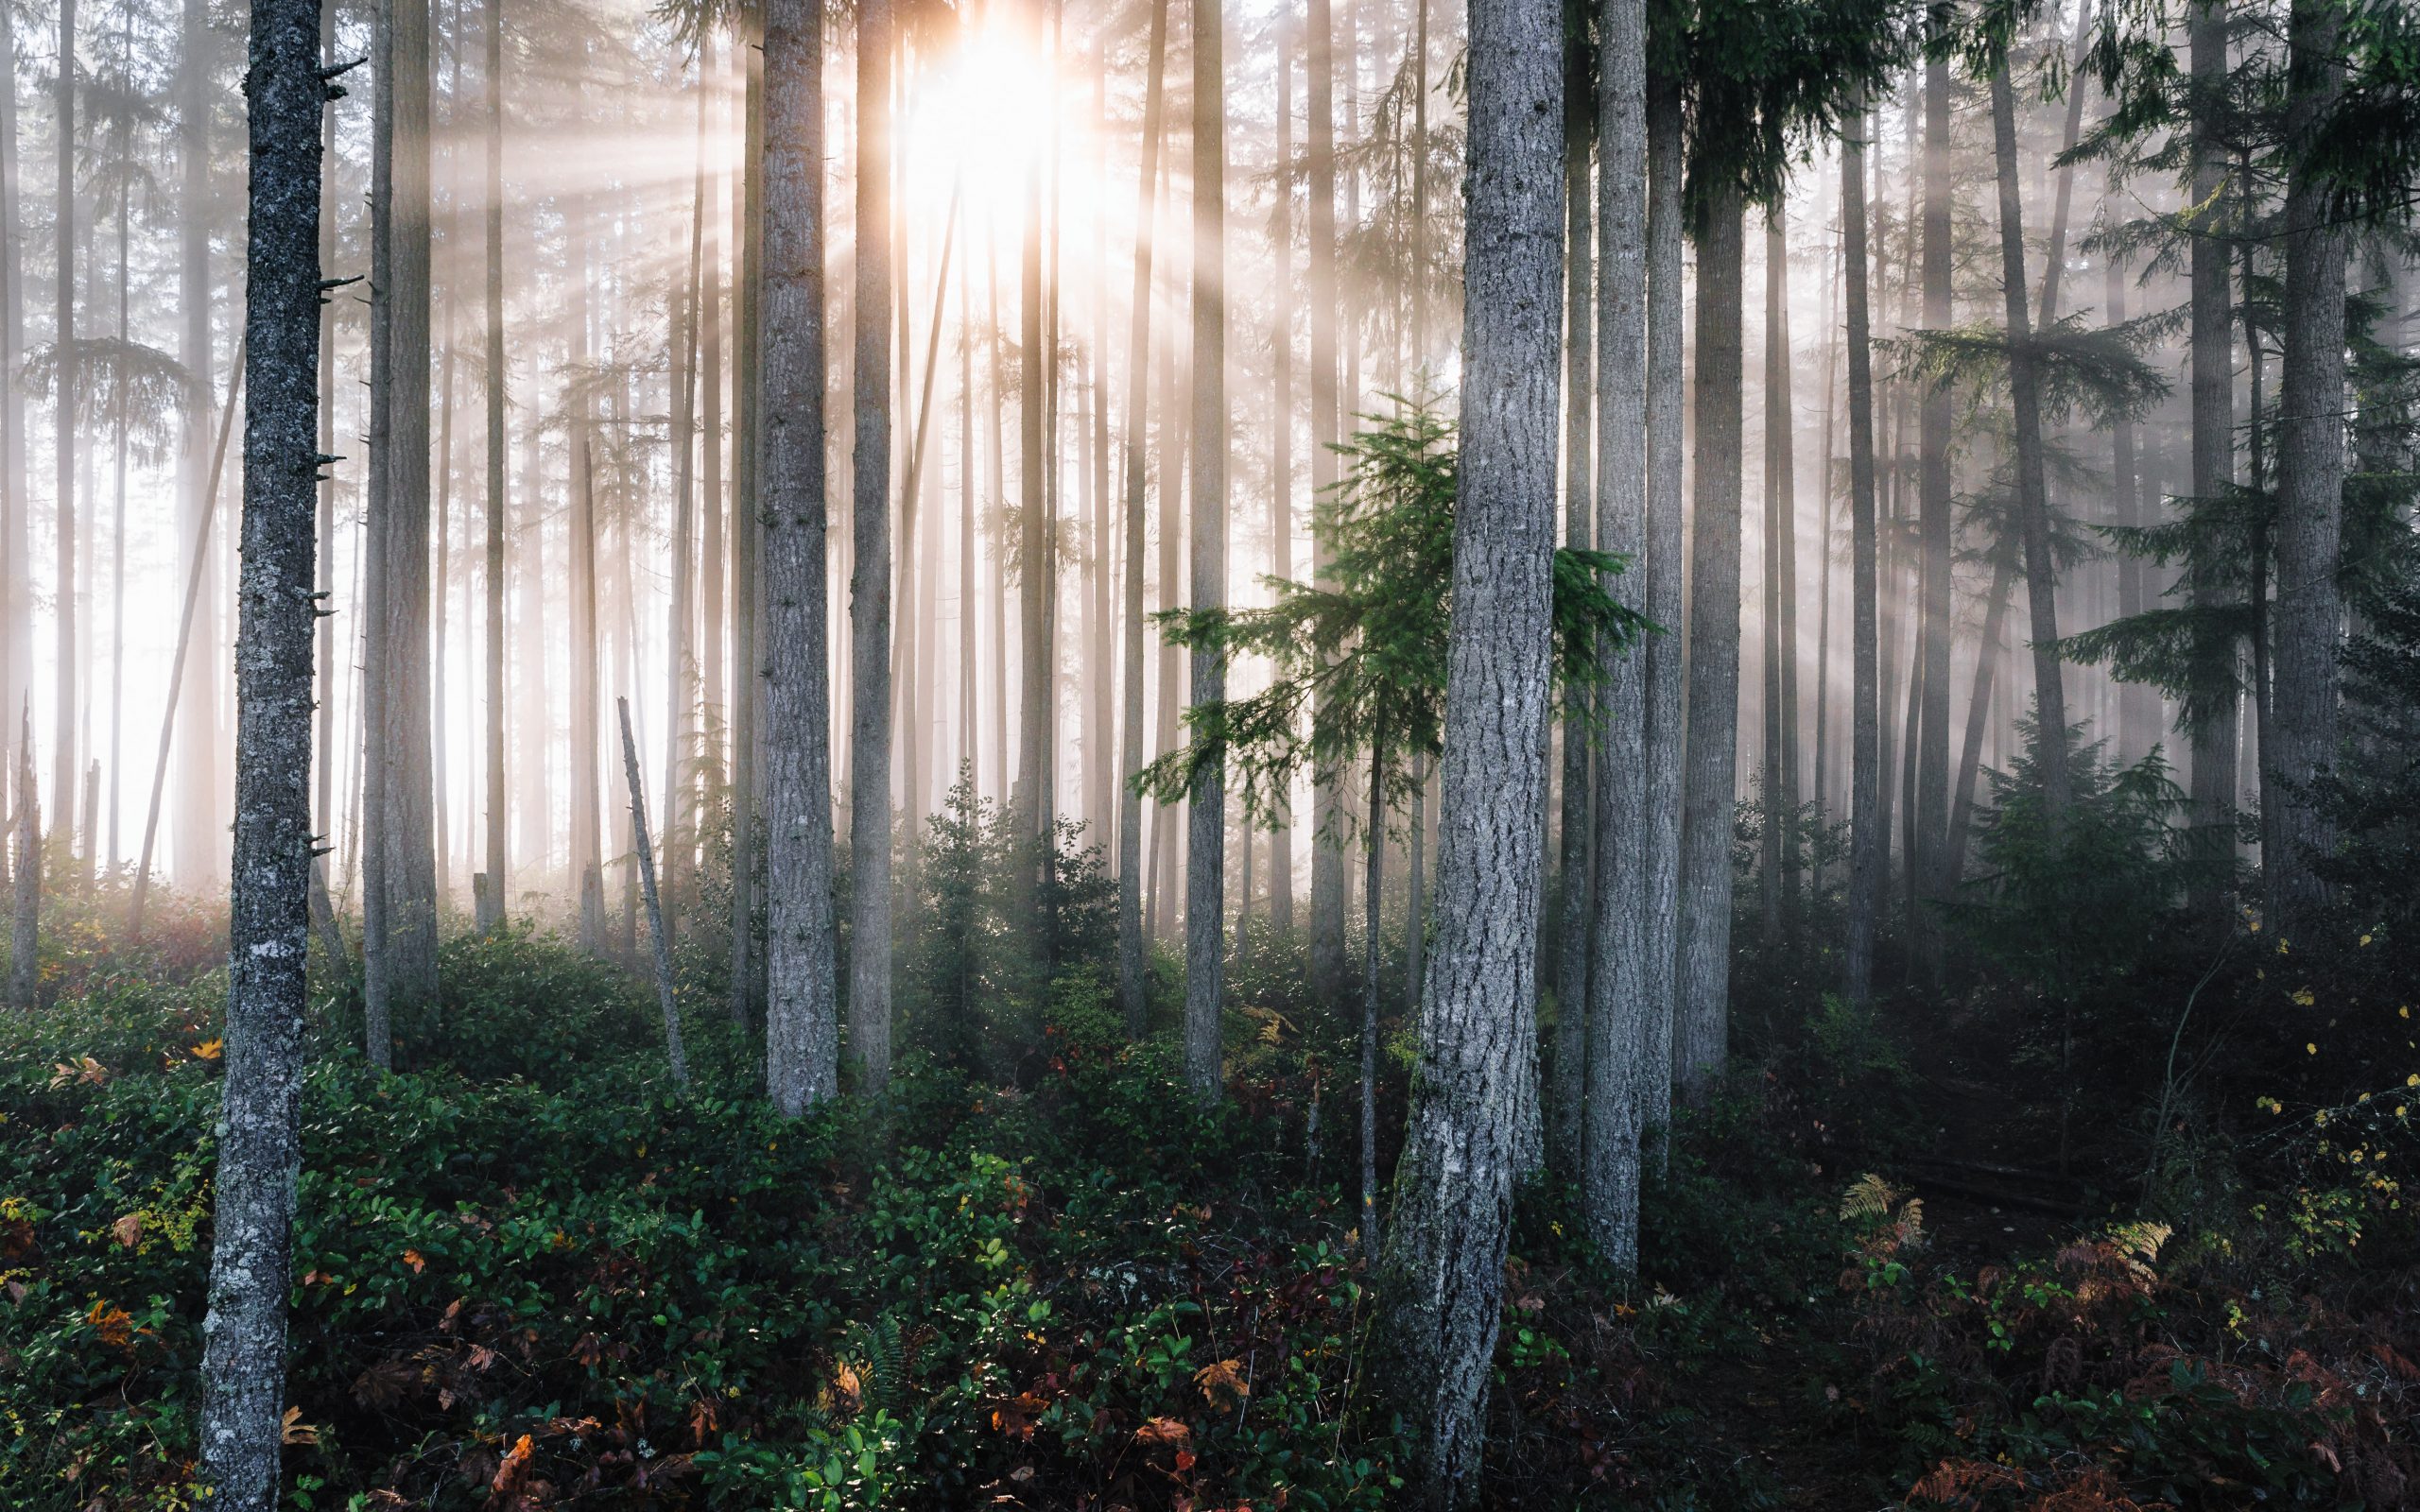 Une photo d'une paisible forêt de pins au lever du soleil. Le sol de la forêt est couvert de buissons verts et le soleil levant brille entre de nombreux arbres hauts, droits et symétriques.